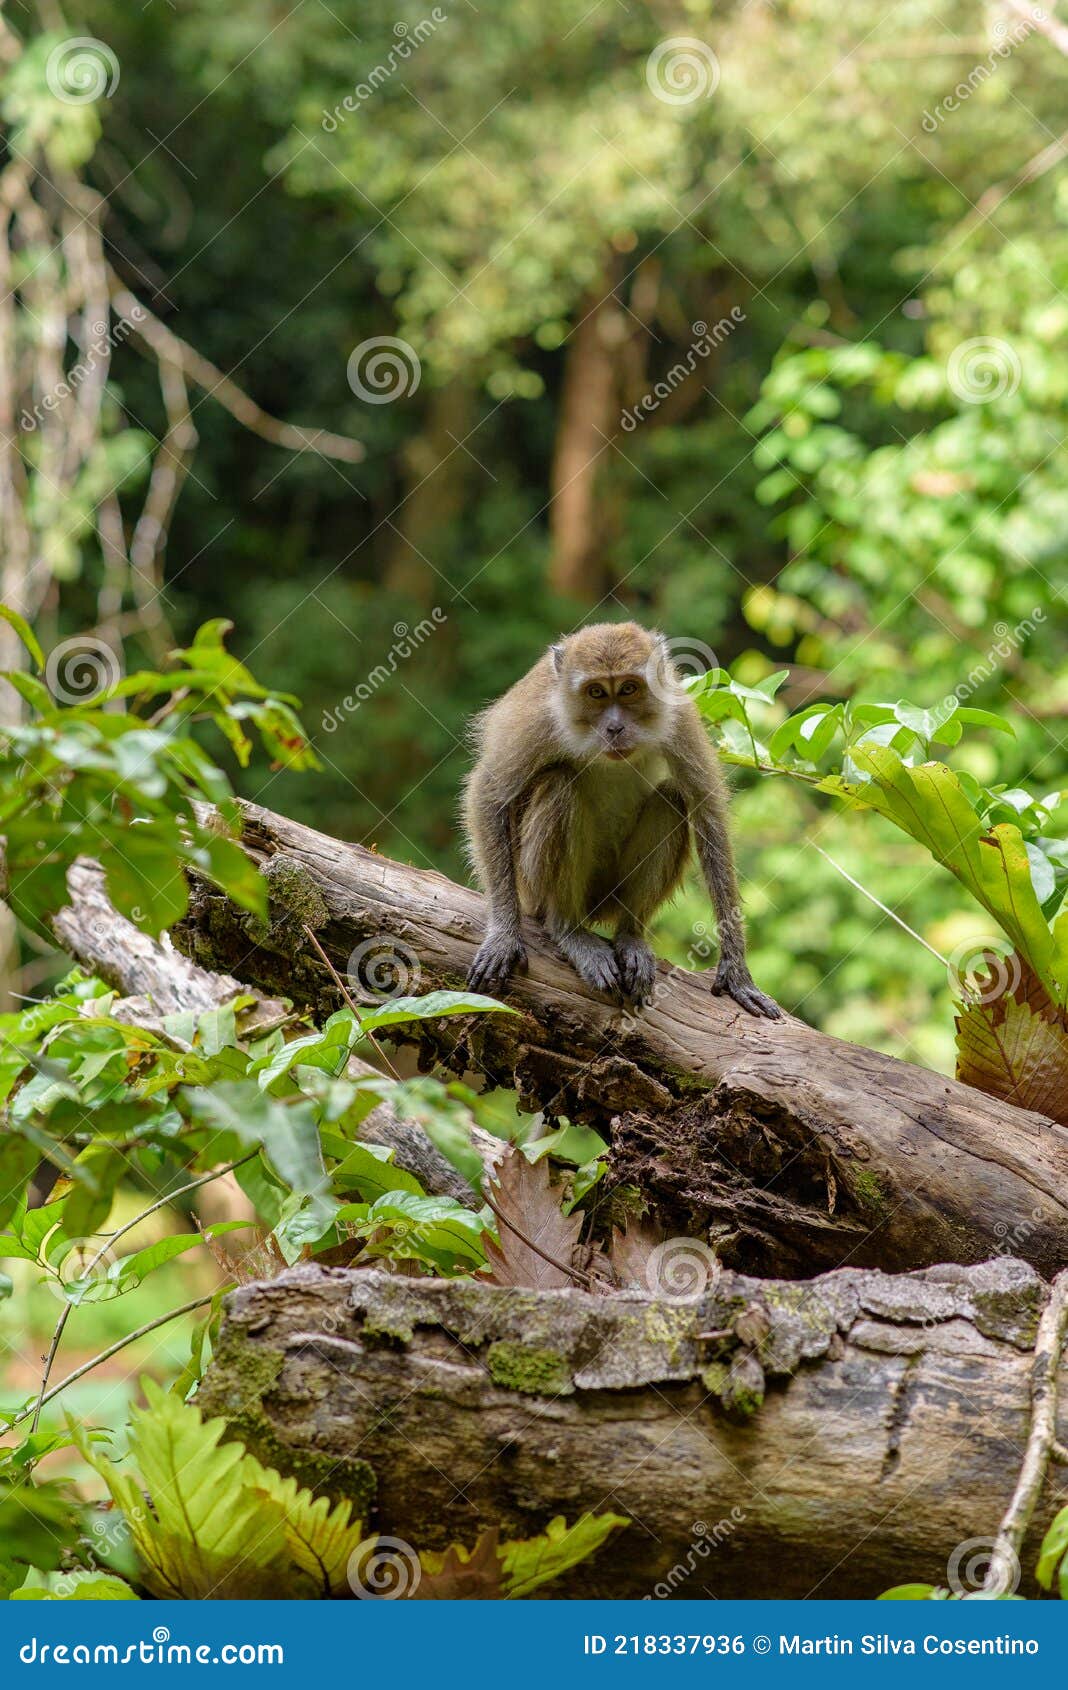 monkey in the taman wisata alam pangandaran in java, indonesia